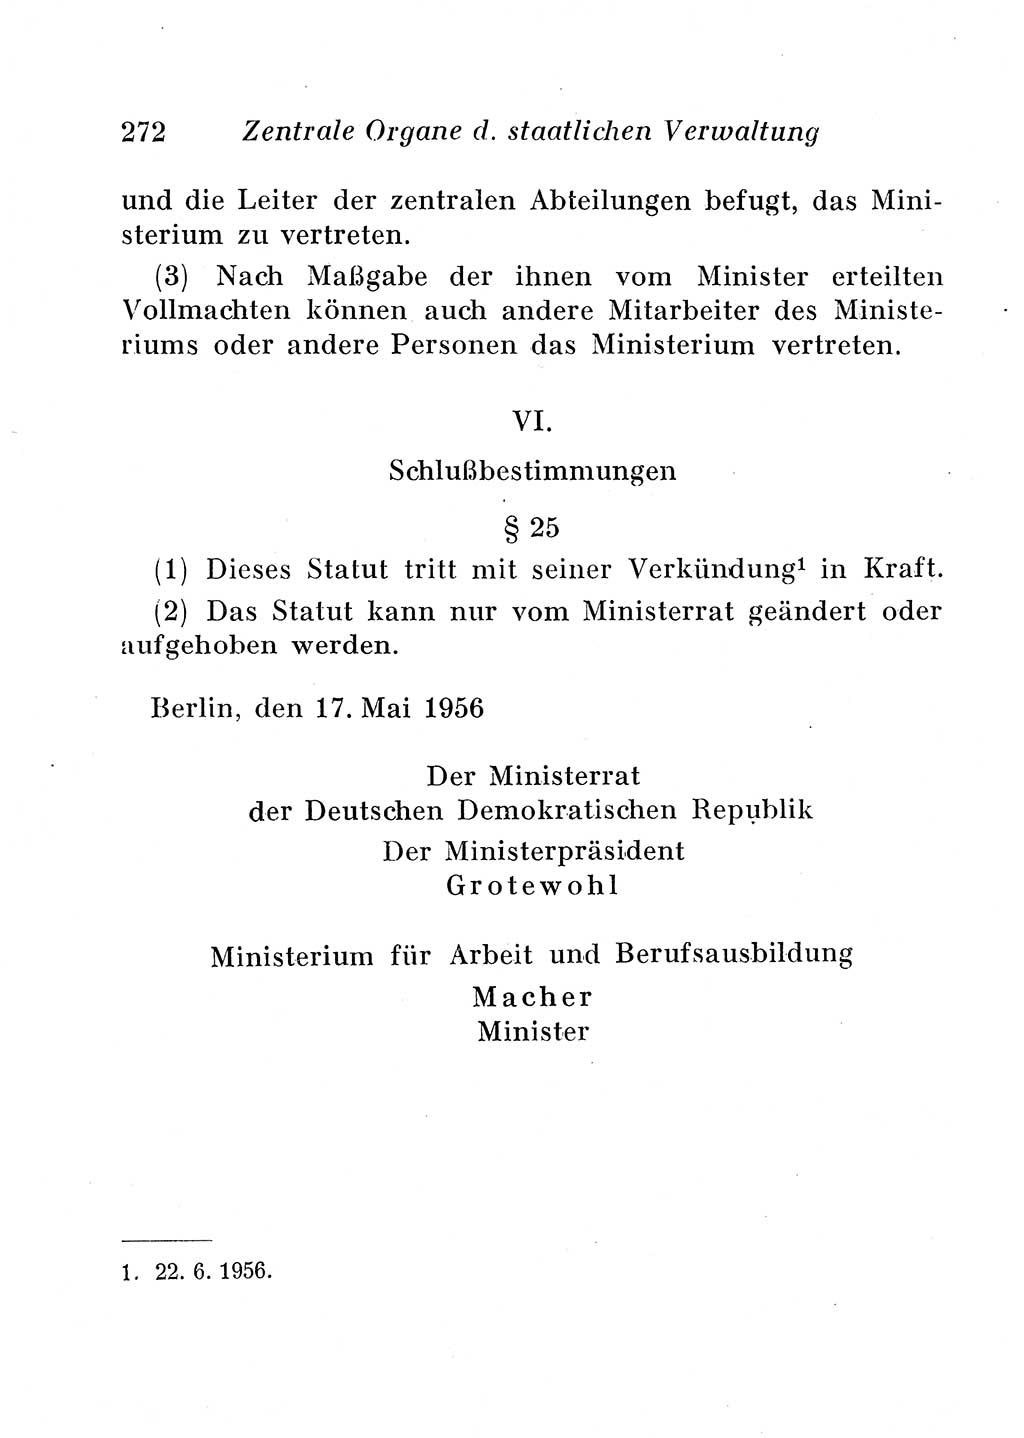 Staats- und verwaltungsrechtliche Gesetze der Deutschen Demokratischen Republik (DDR) 1958, Seite 272 (StVerwR Ges. DDR 1958, S. 272)